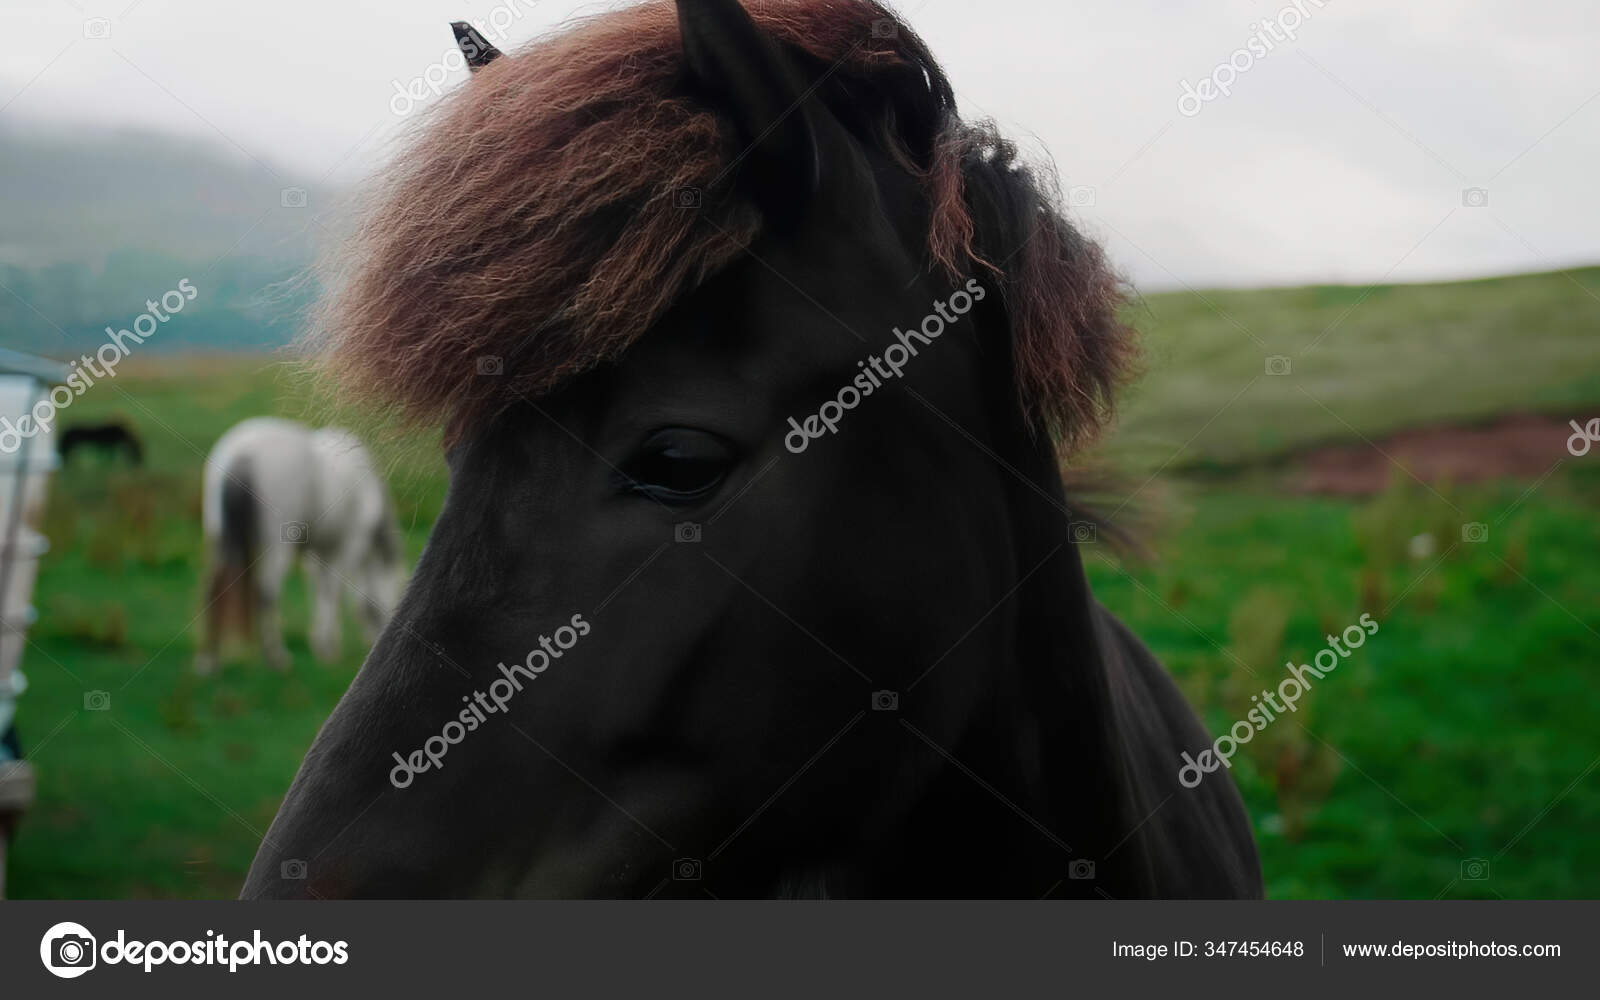 Cavalo Que Olha Para a Frente Imagem de Stock - Imagem de beleza, porta:  108436819